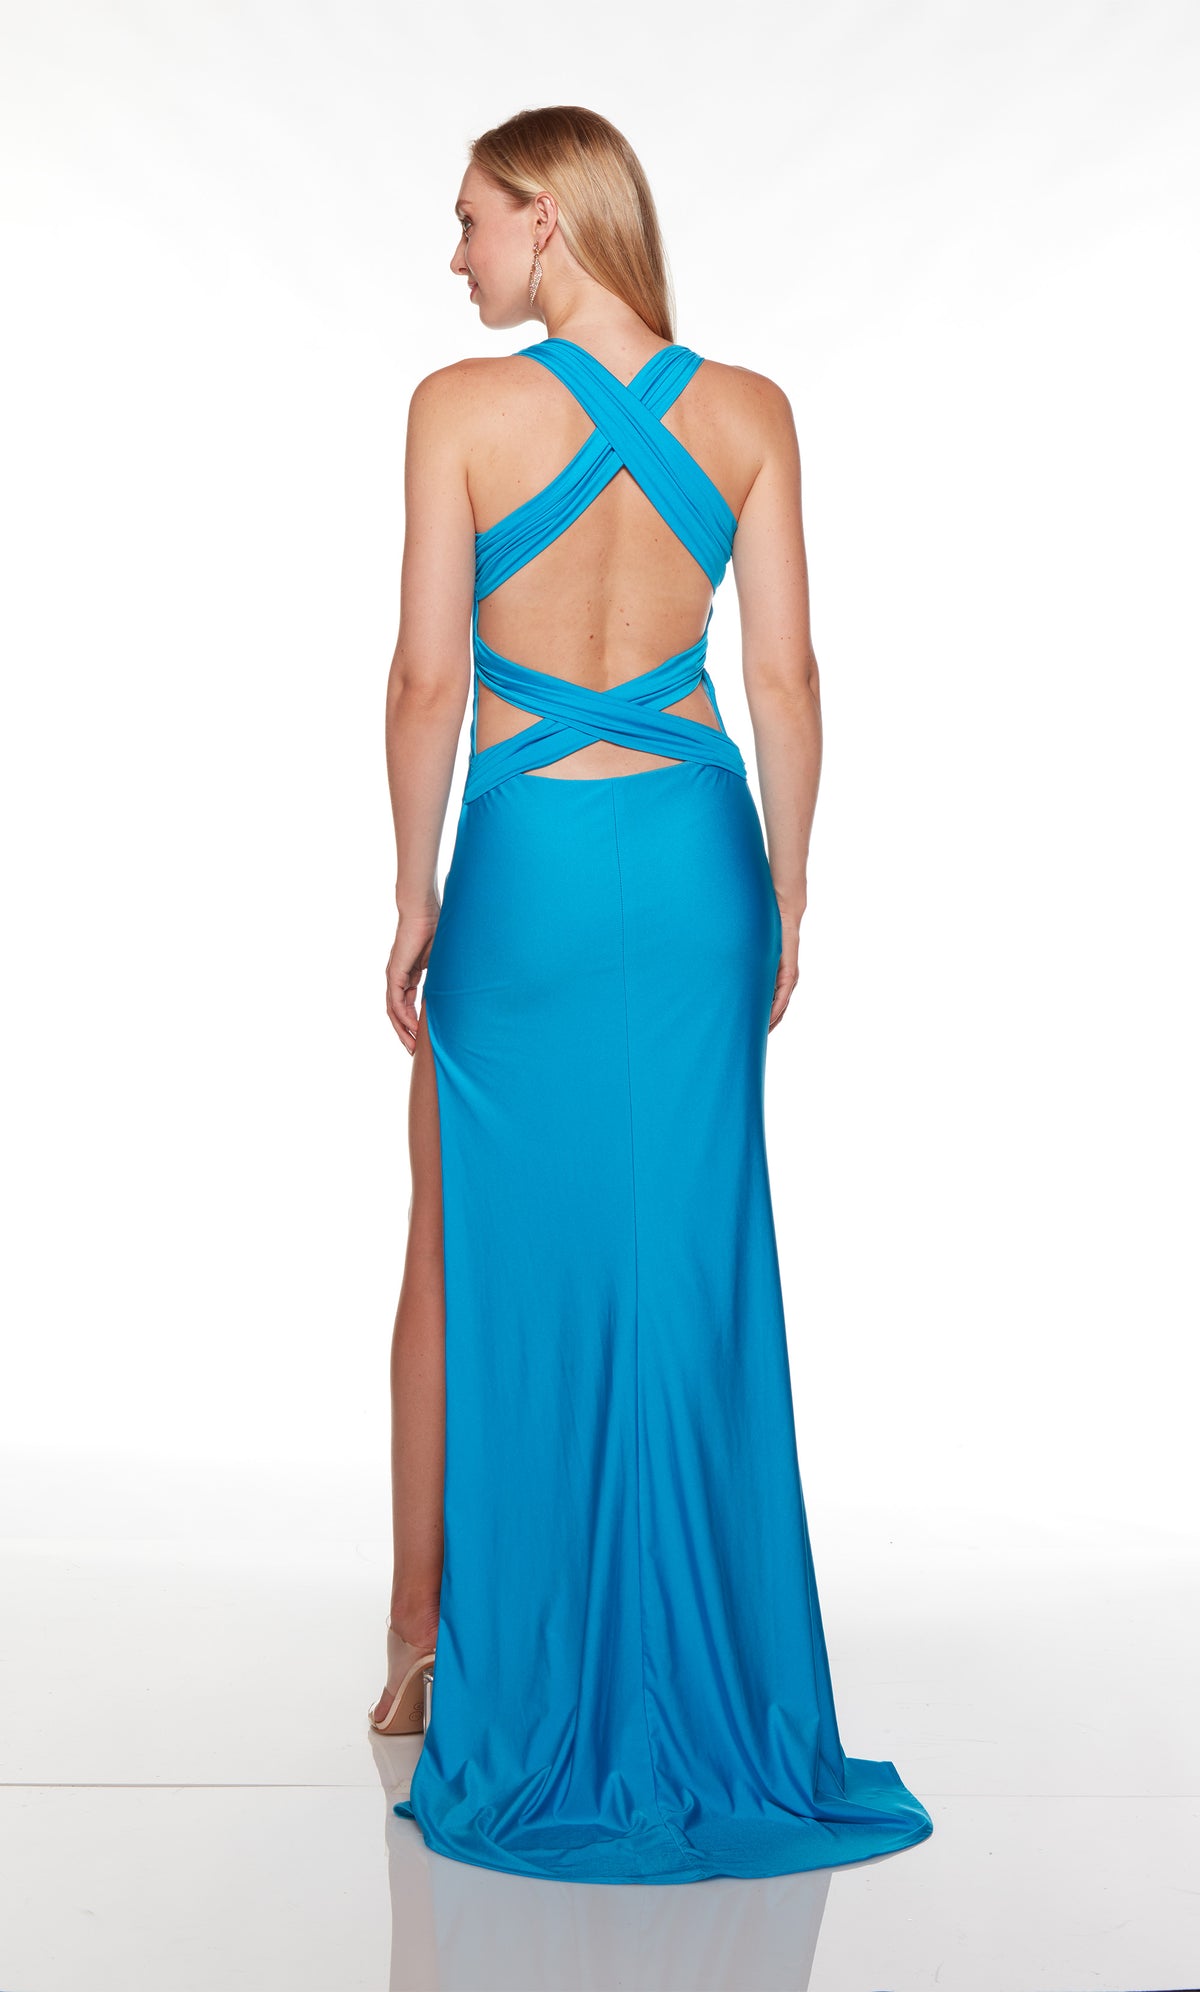 Blue formal gown with deep V neckline and side slit.